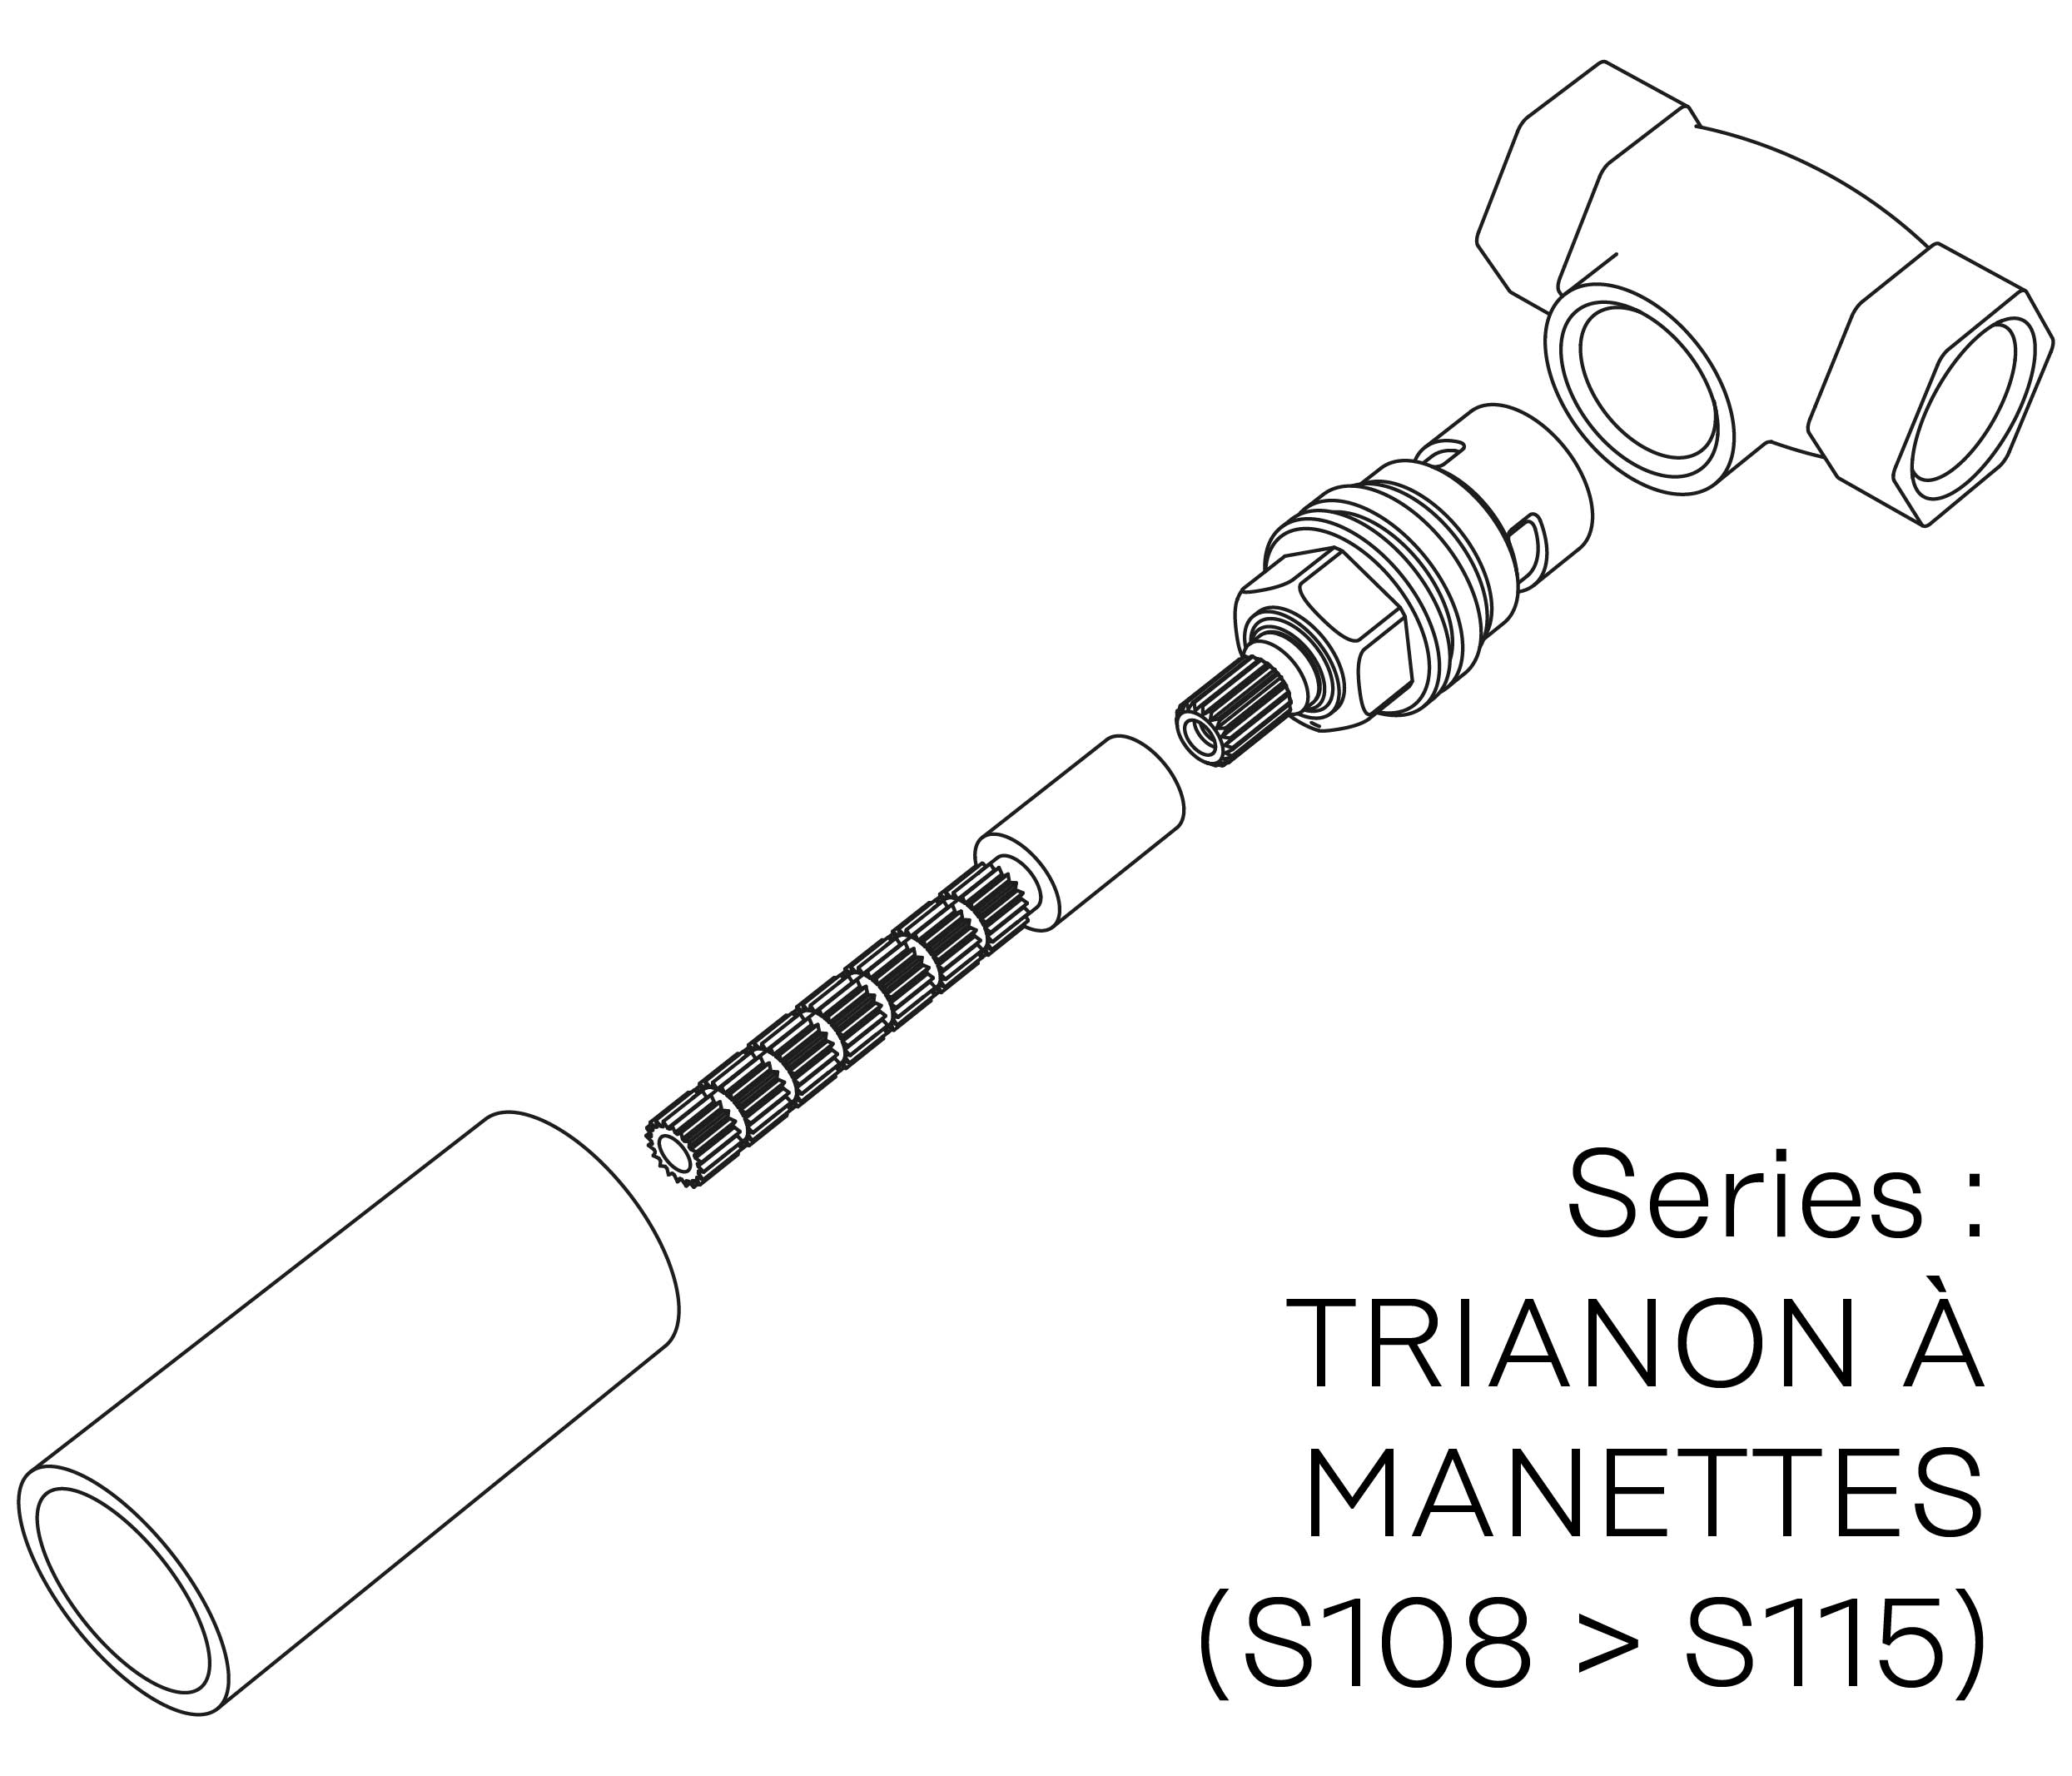 S00-26K28C Kit #6 for W-M valve 1/2″, 1/4 turn, Right